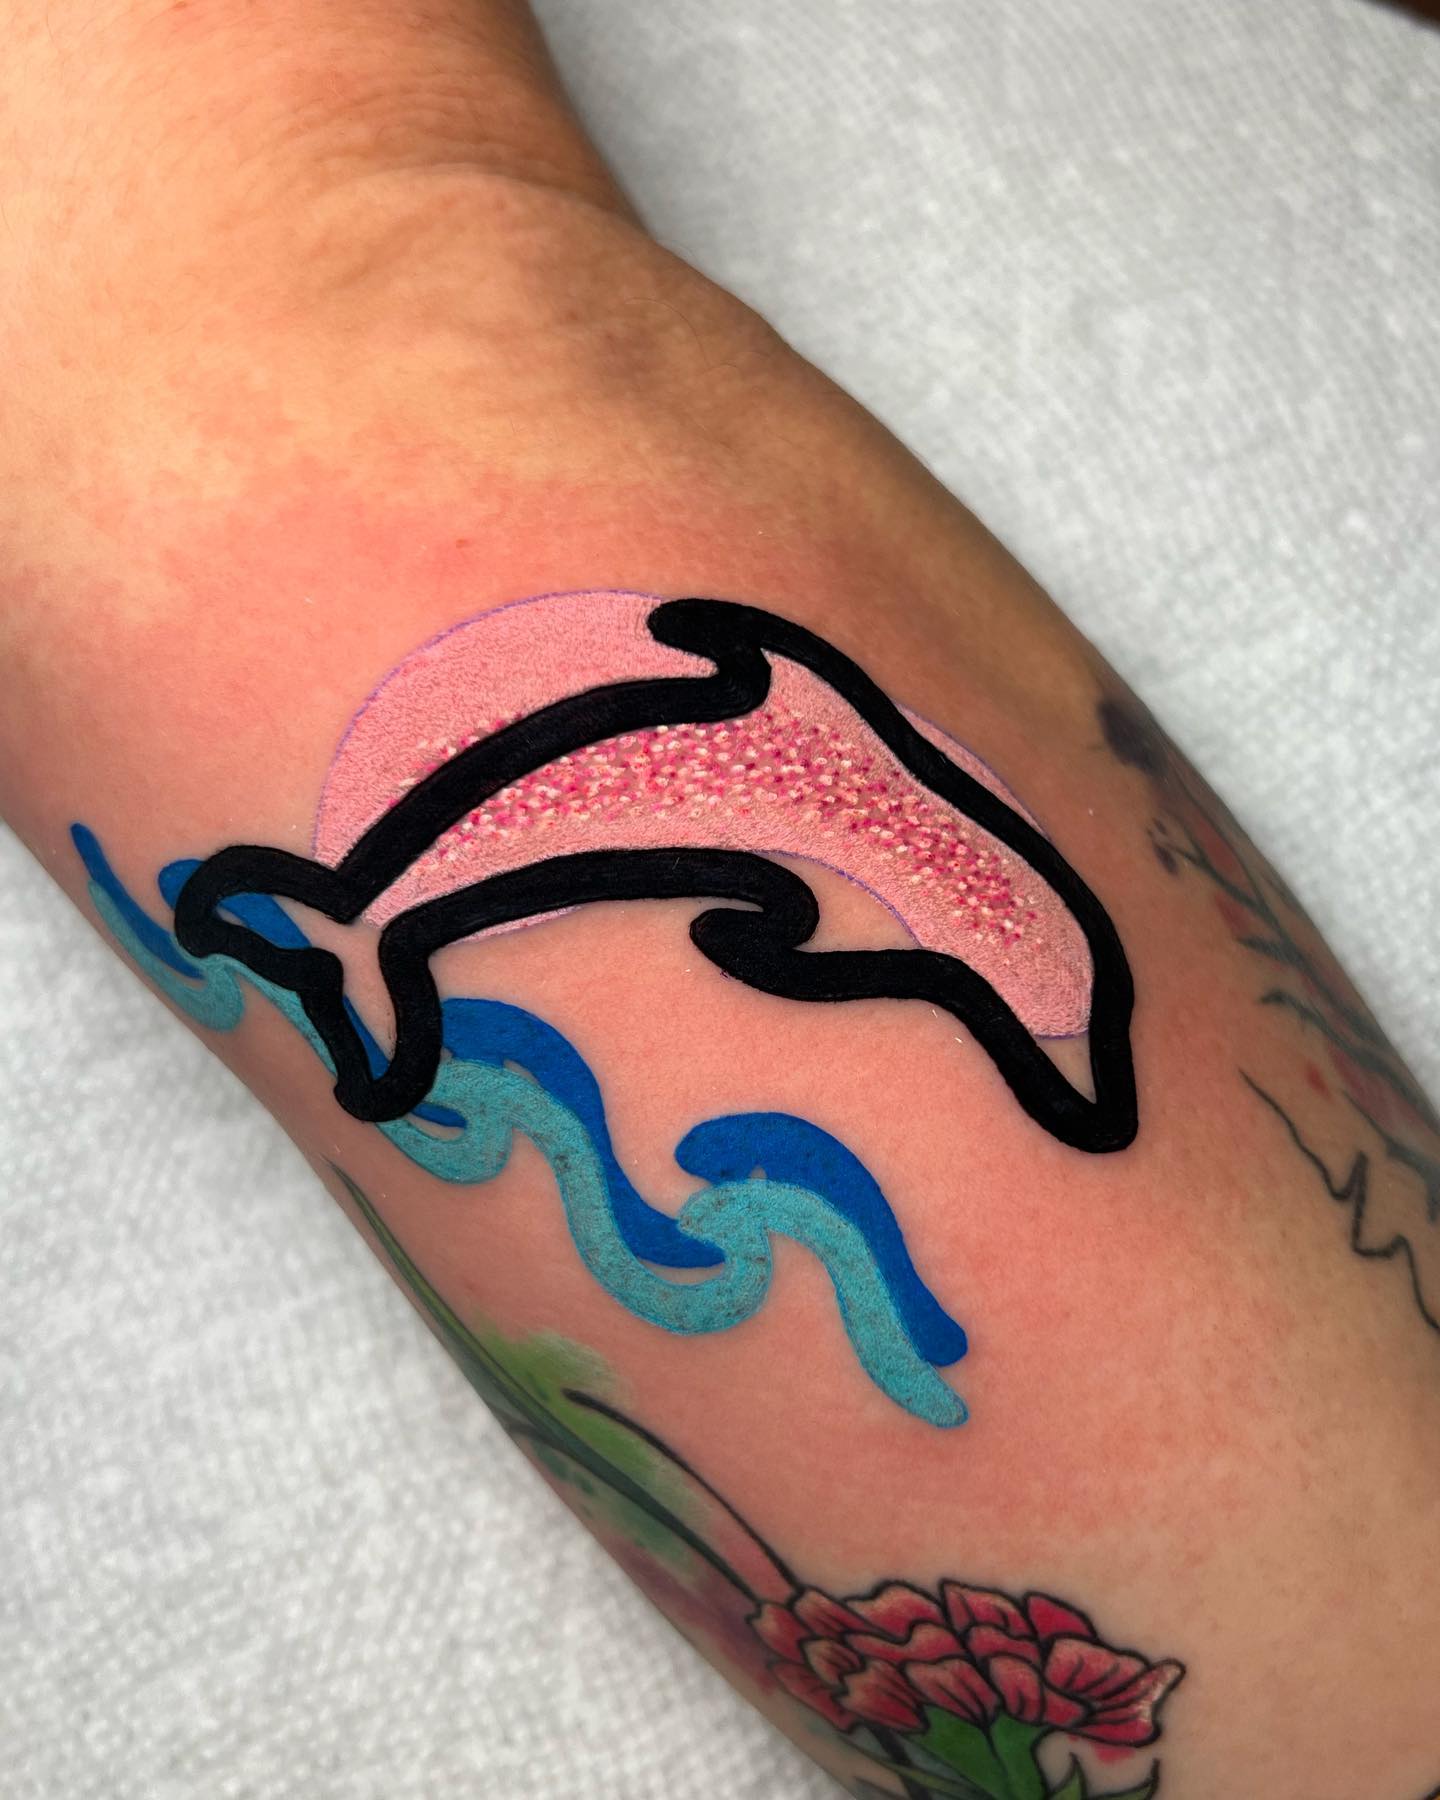 Tatuaje de delfín vibrante y divertido.